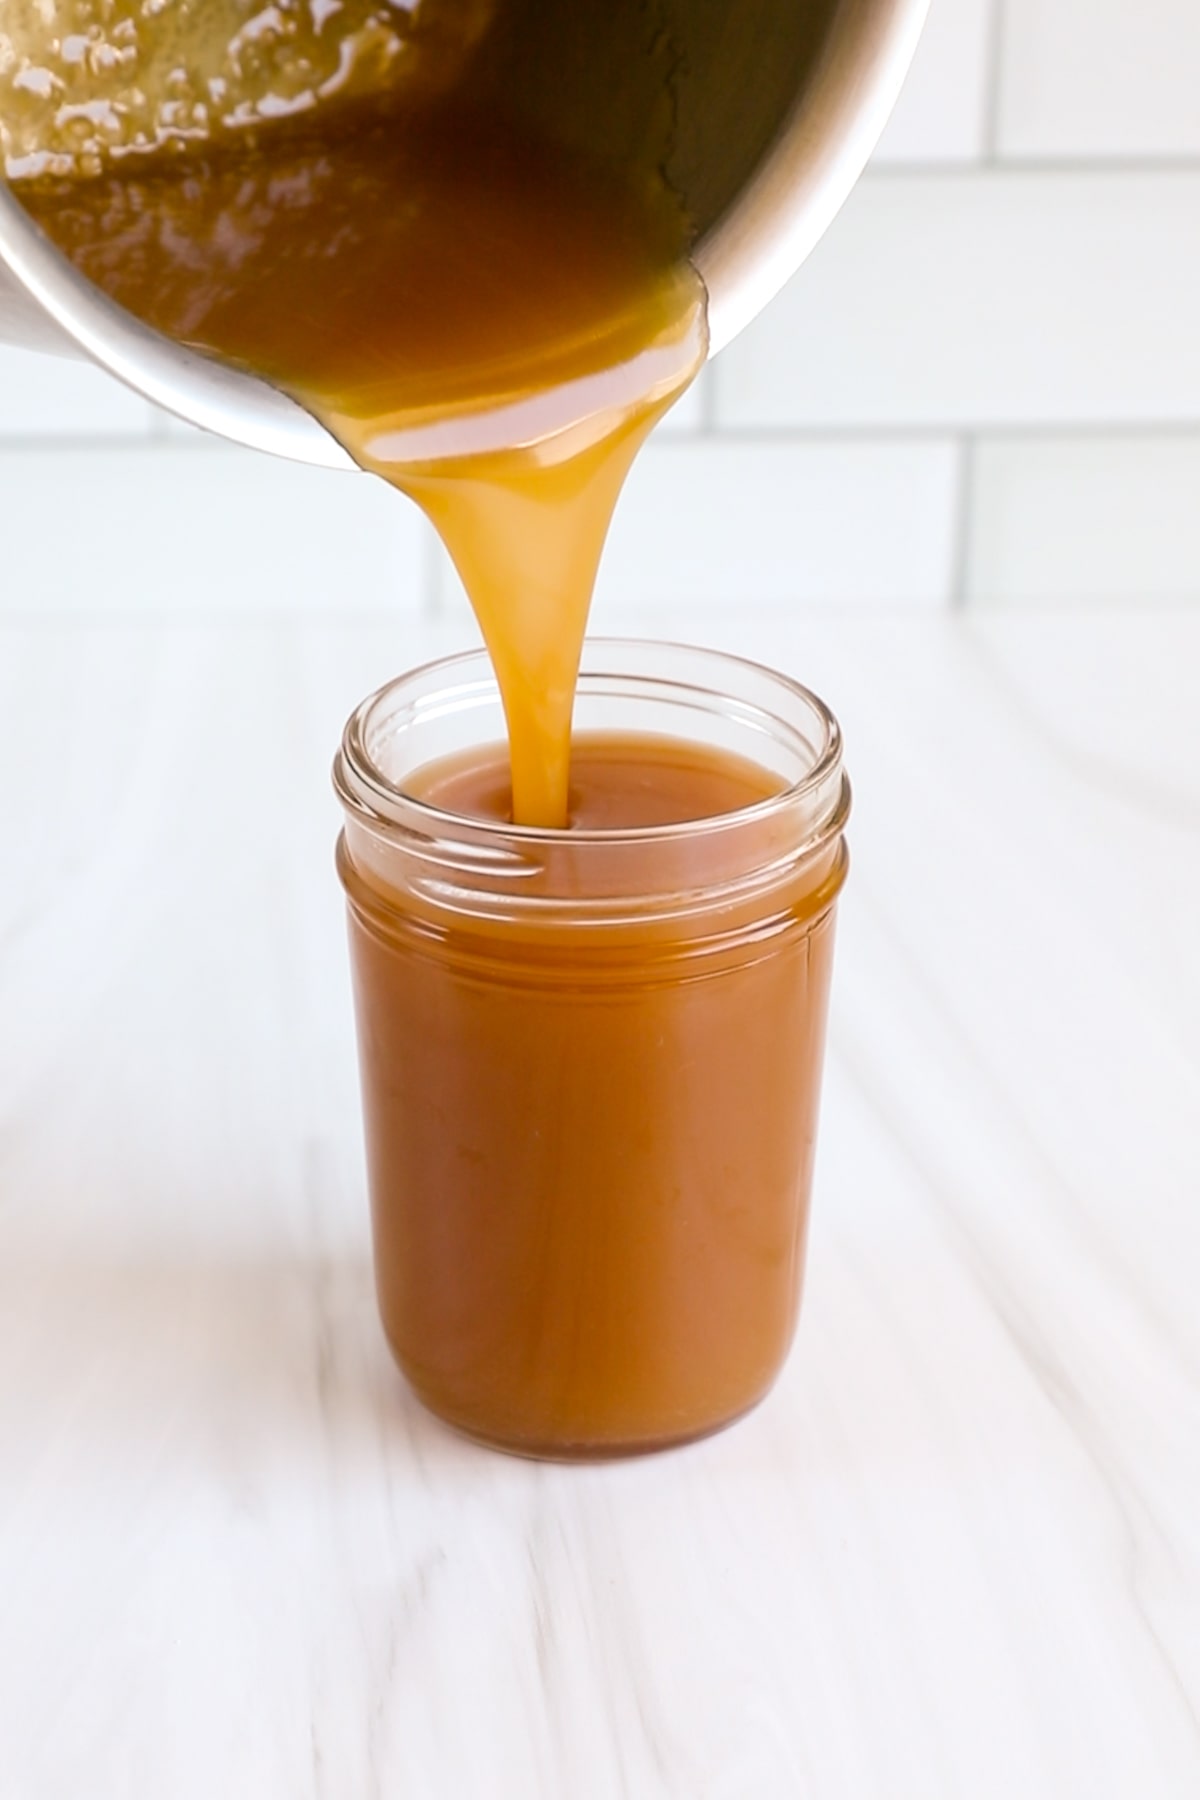 caramel sauce pouring into jar.